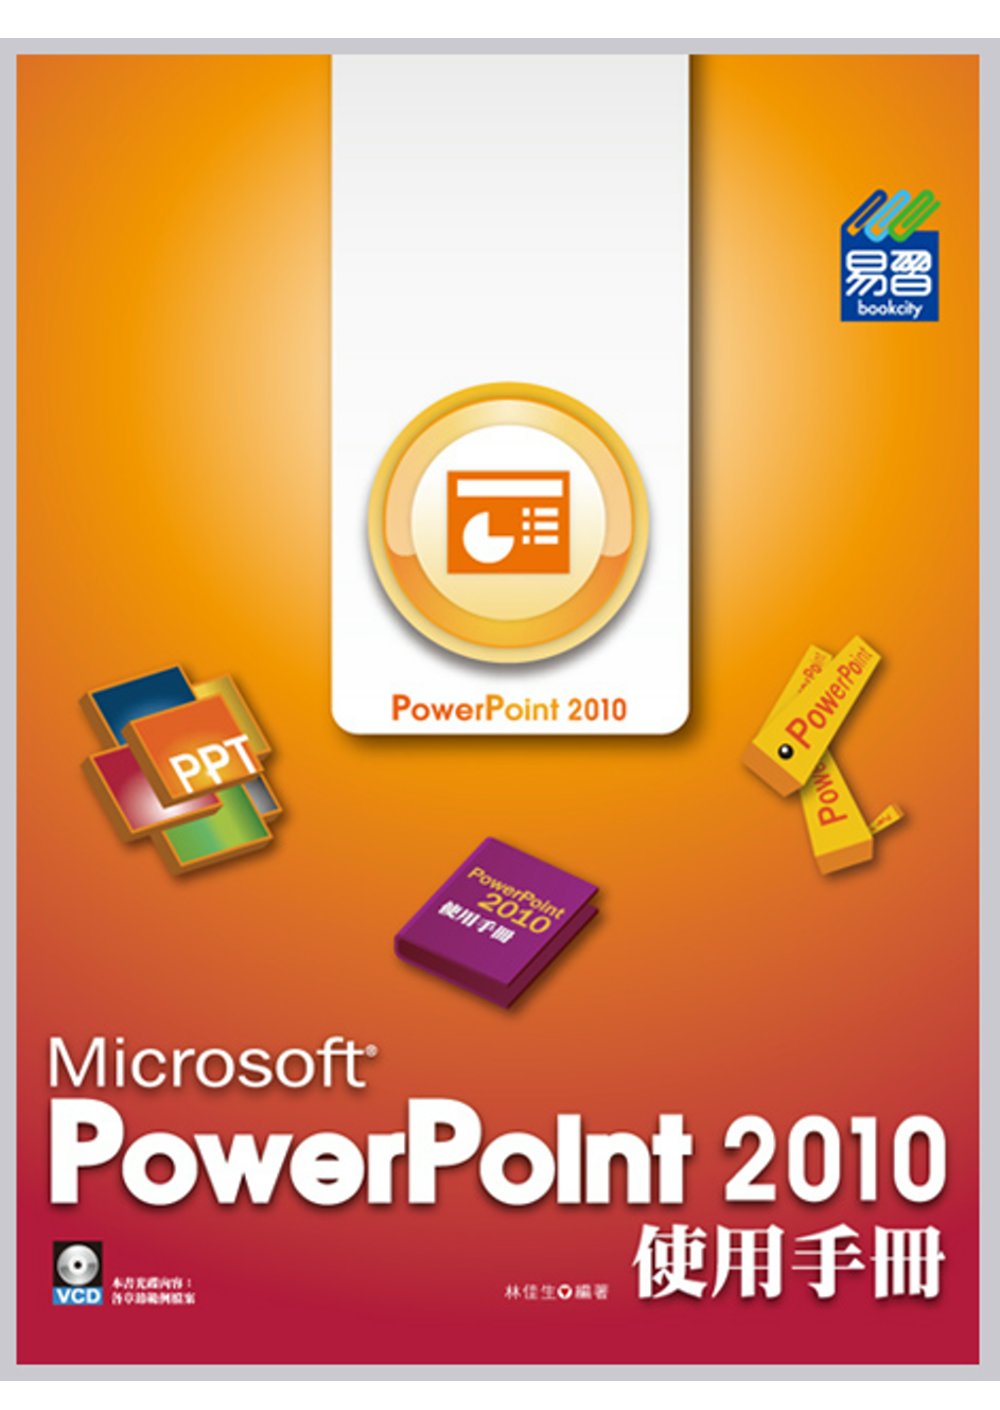 PowerPoint 2010 使用手冊(附VCD一片)